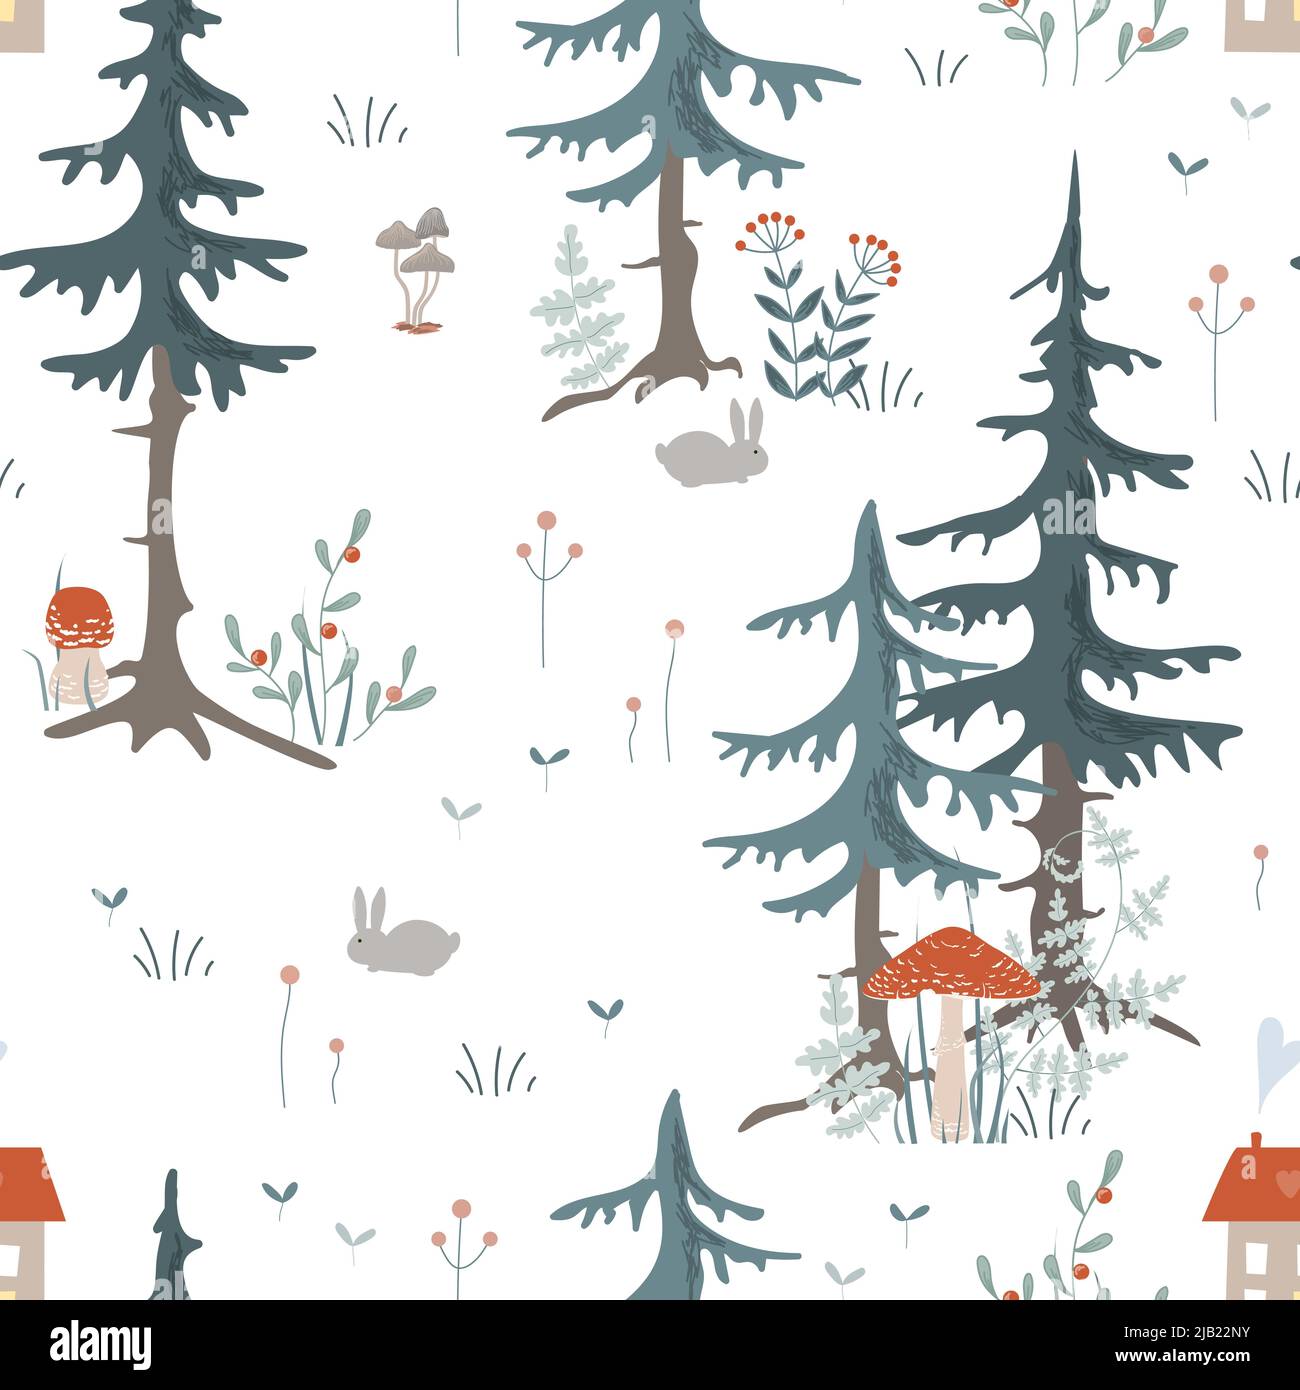 Doodle e accogliente bosco senza cuciture pattern. Piante forestali disegnate a mano su sfondo bianco. Disegno in stile scandinavo di erbe e fiori. Illustrazione Vettoriale